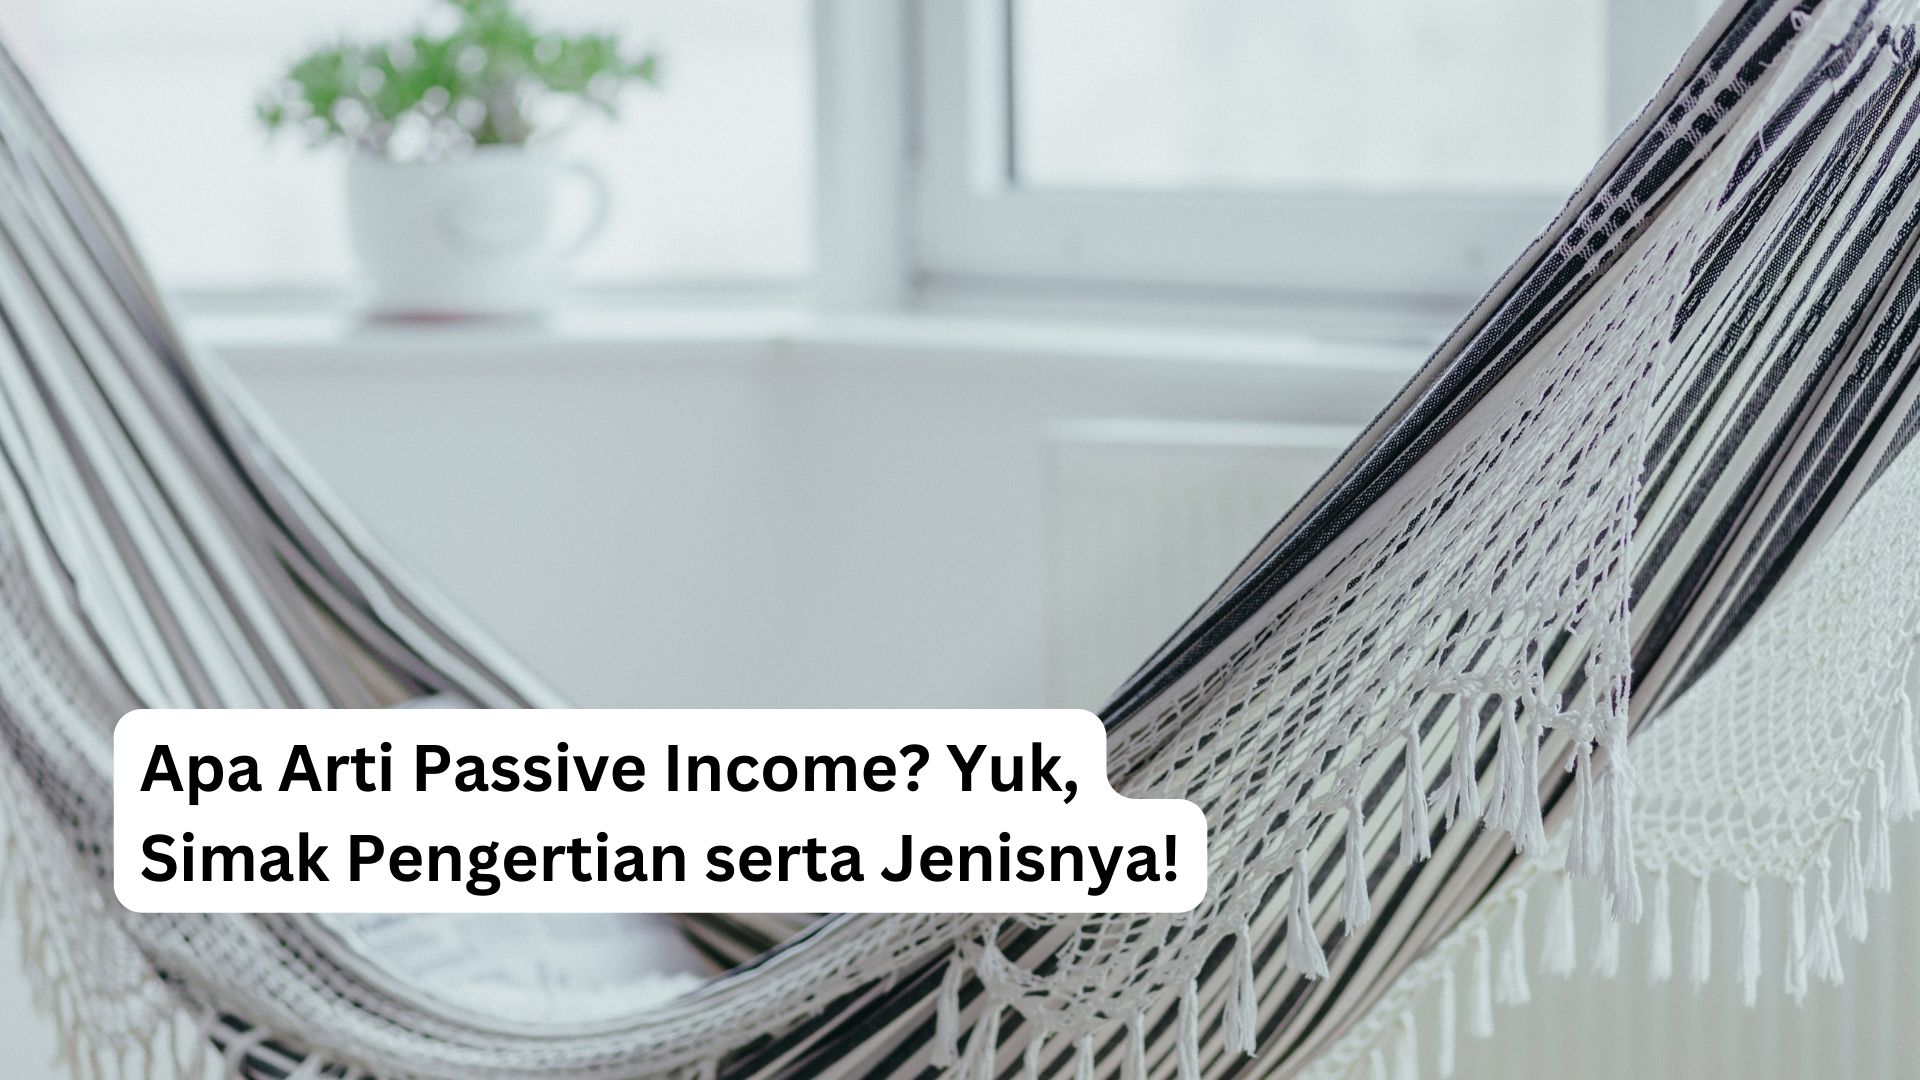 You are currently viewing Apa Arti Passive Income? Yuk, Simak Pengertian serta Jenisnya!